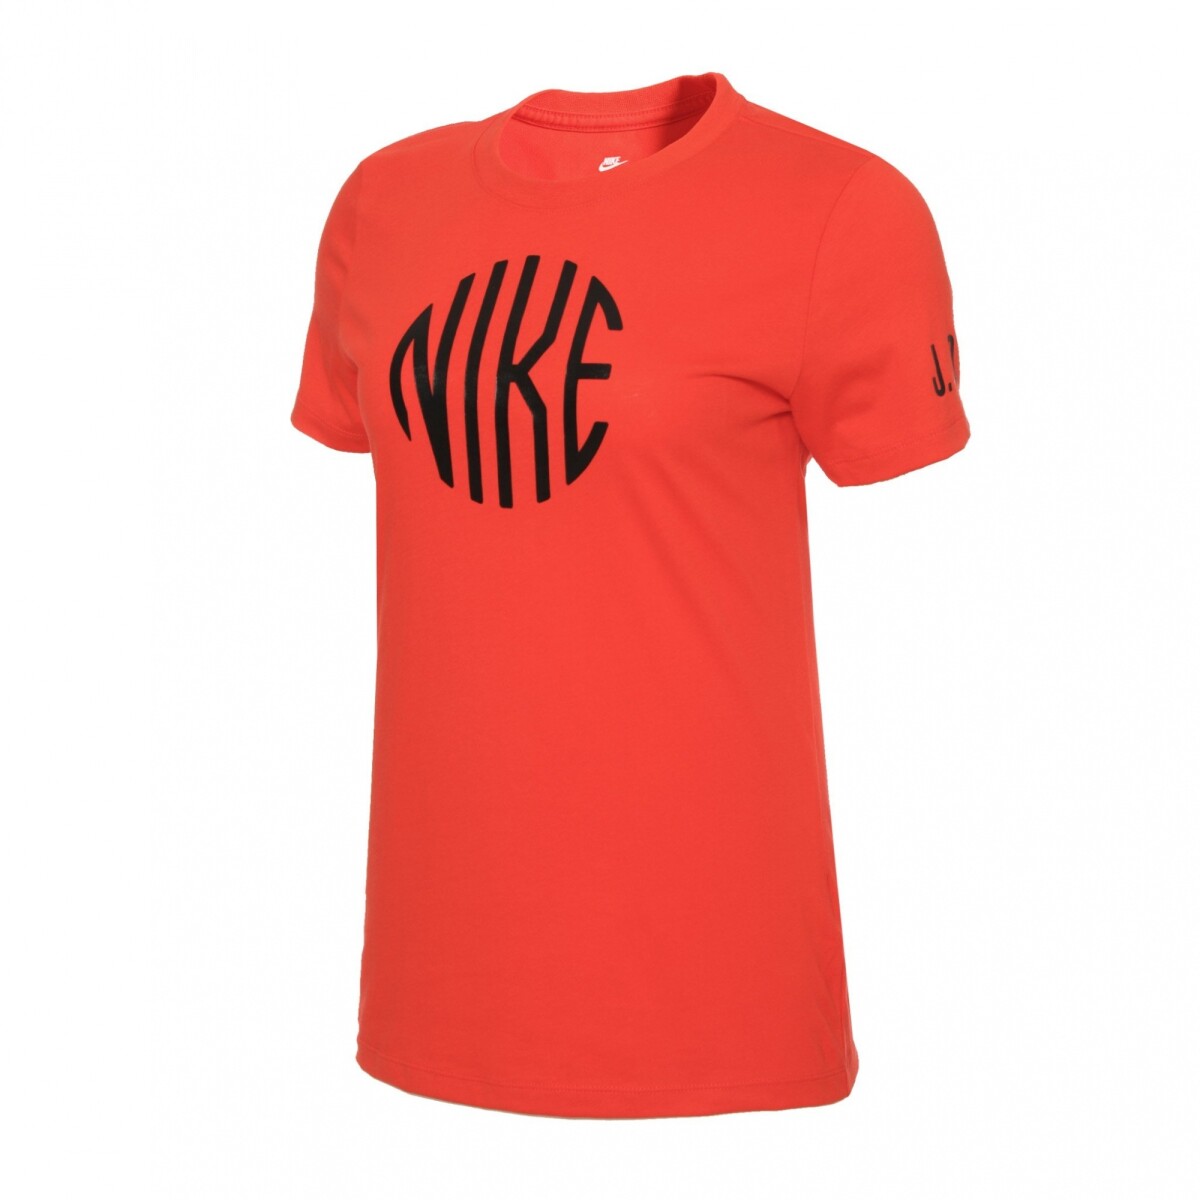 Remera Nike Moda Dama Tee Icon Clash CHILE - Color Único 